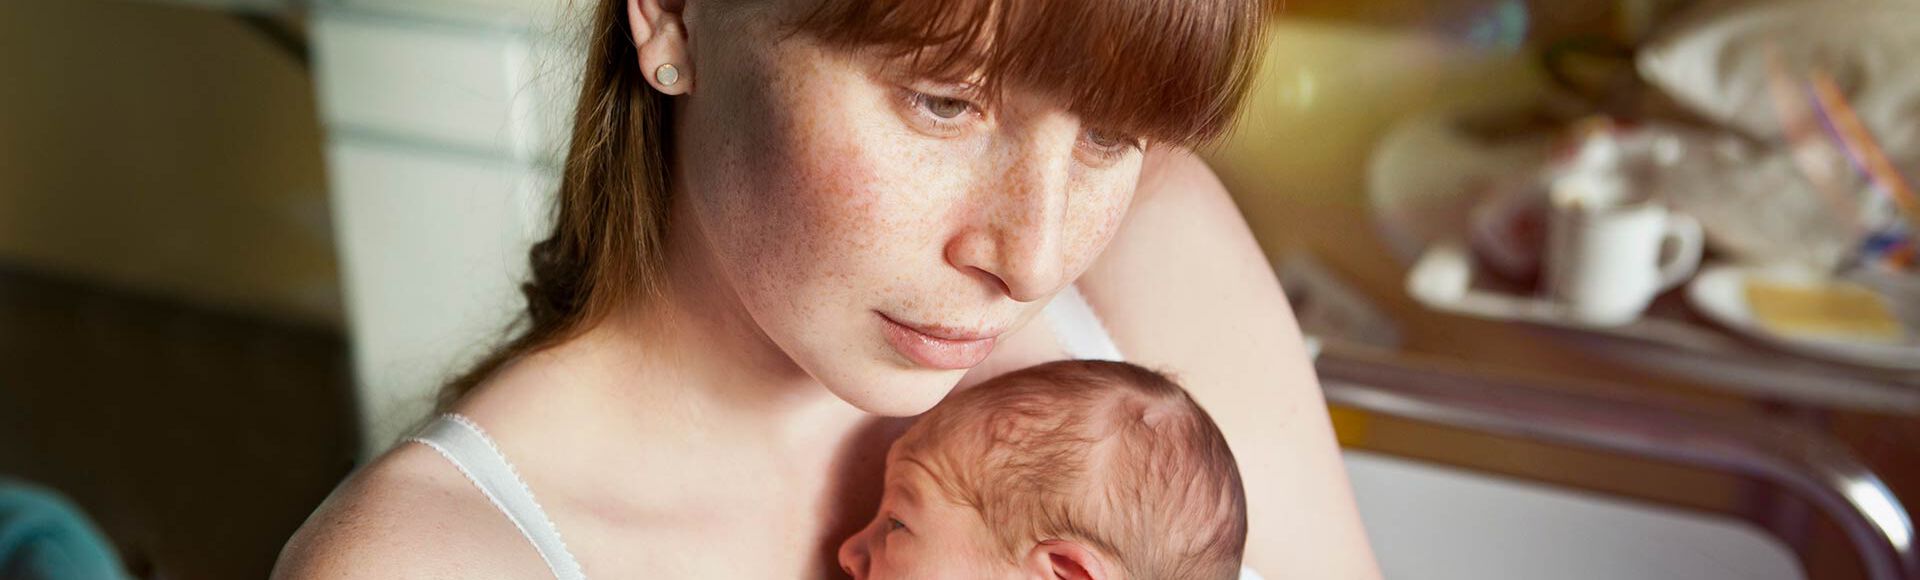 Mulher segurando bebê recém nascido